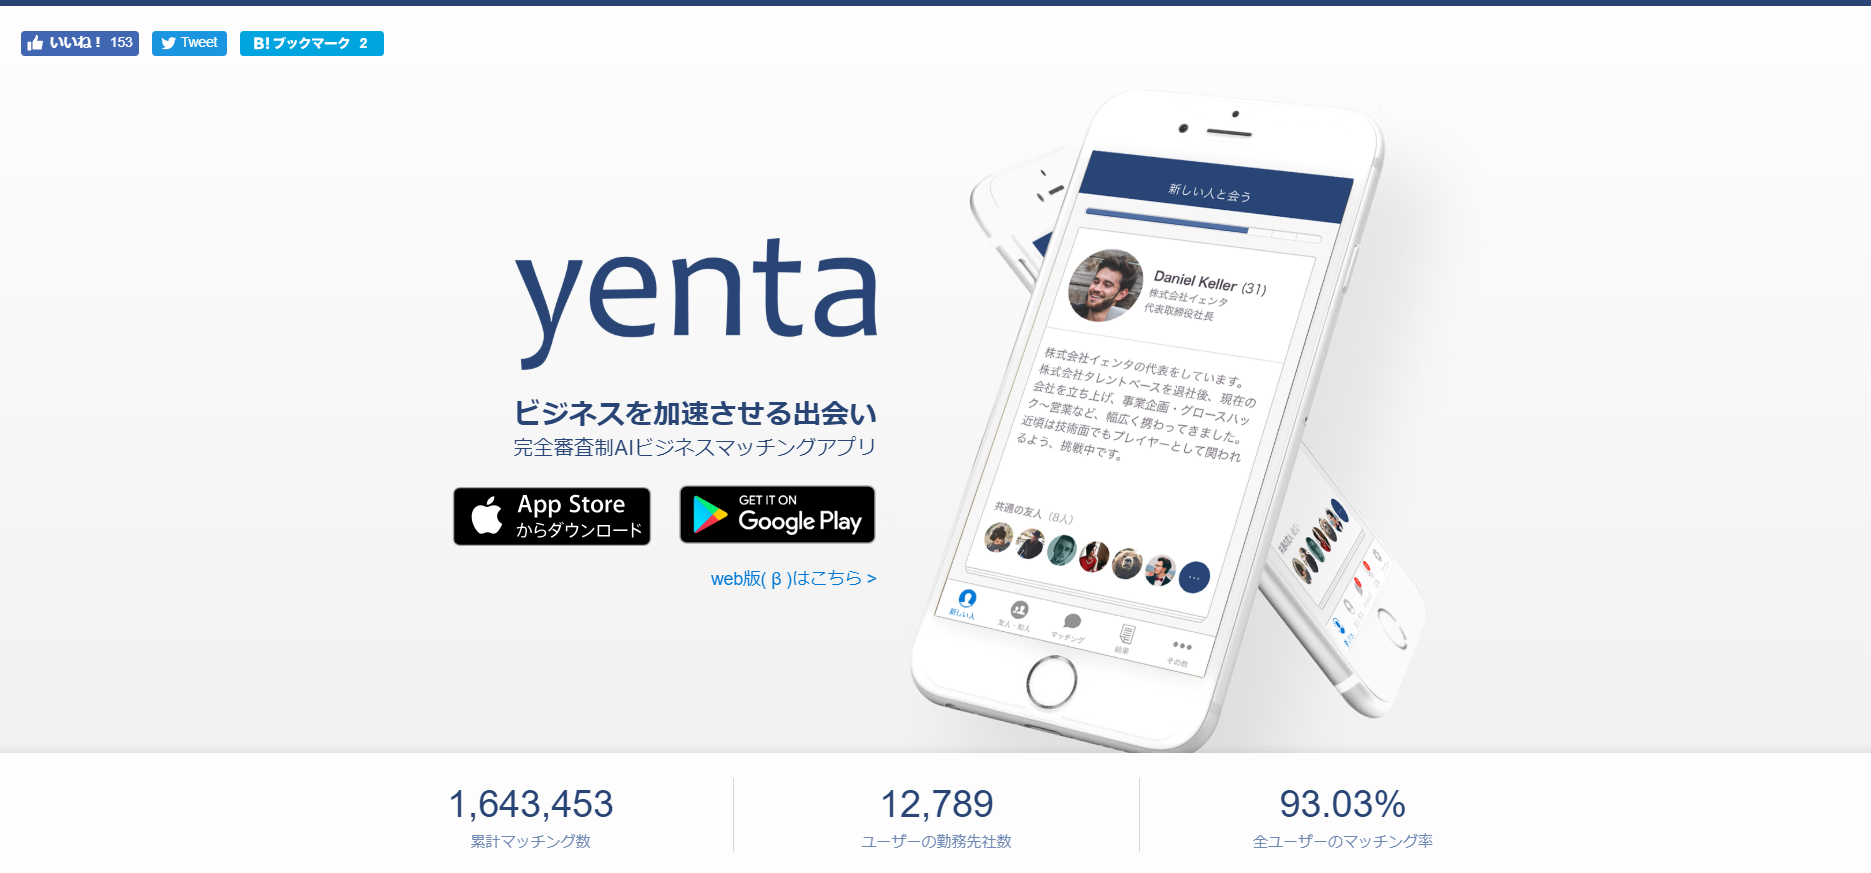 「完全審査制 AIビジネスマッチングアプリ - yenta」